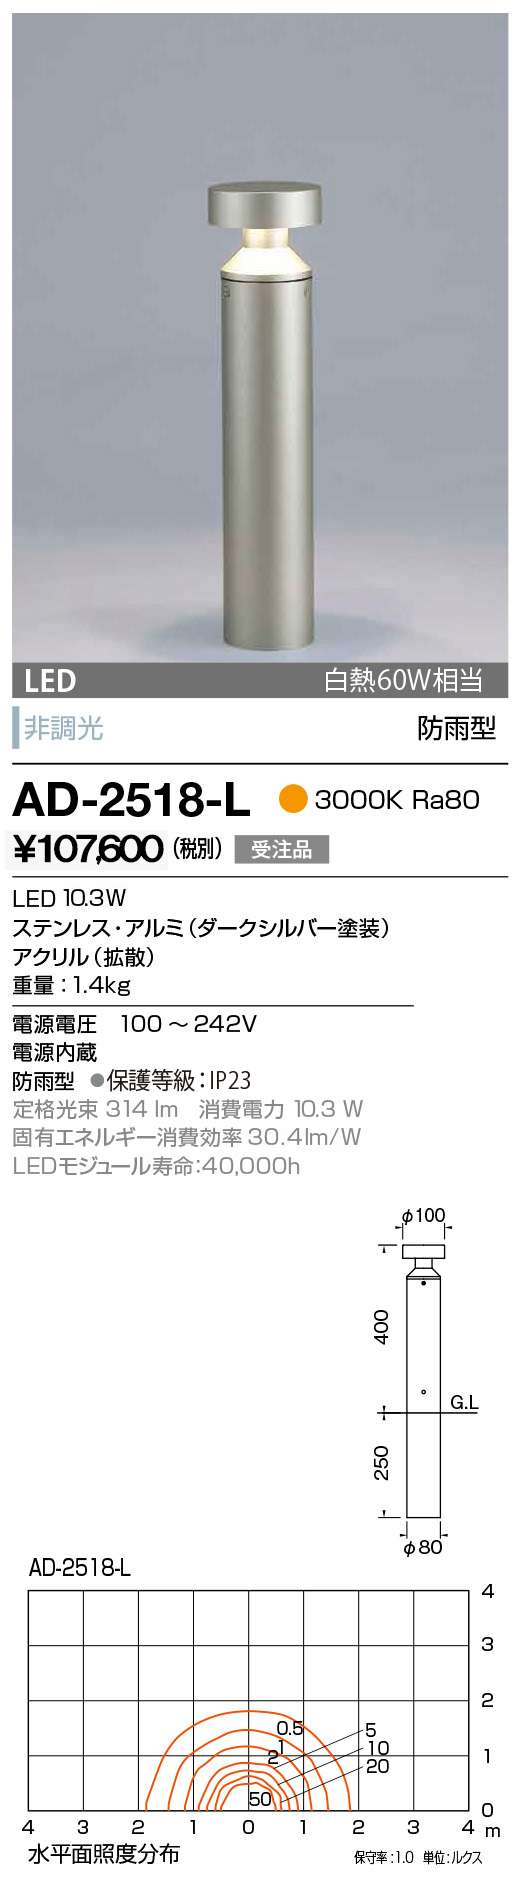 山田照明 山田照明 エクステリア LEDガーデンライト 防雨型 調光 ランプ別売 黒色 3000K 電球色:AN-3269 屋外照明